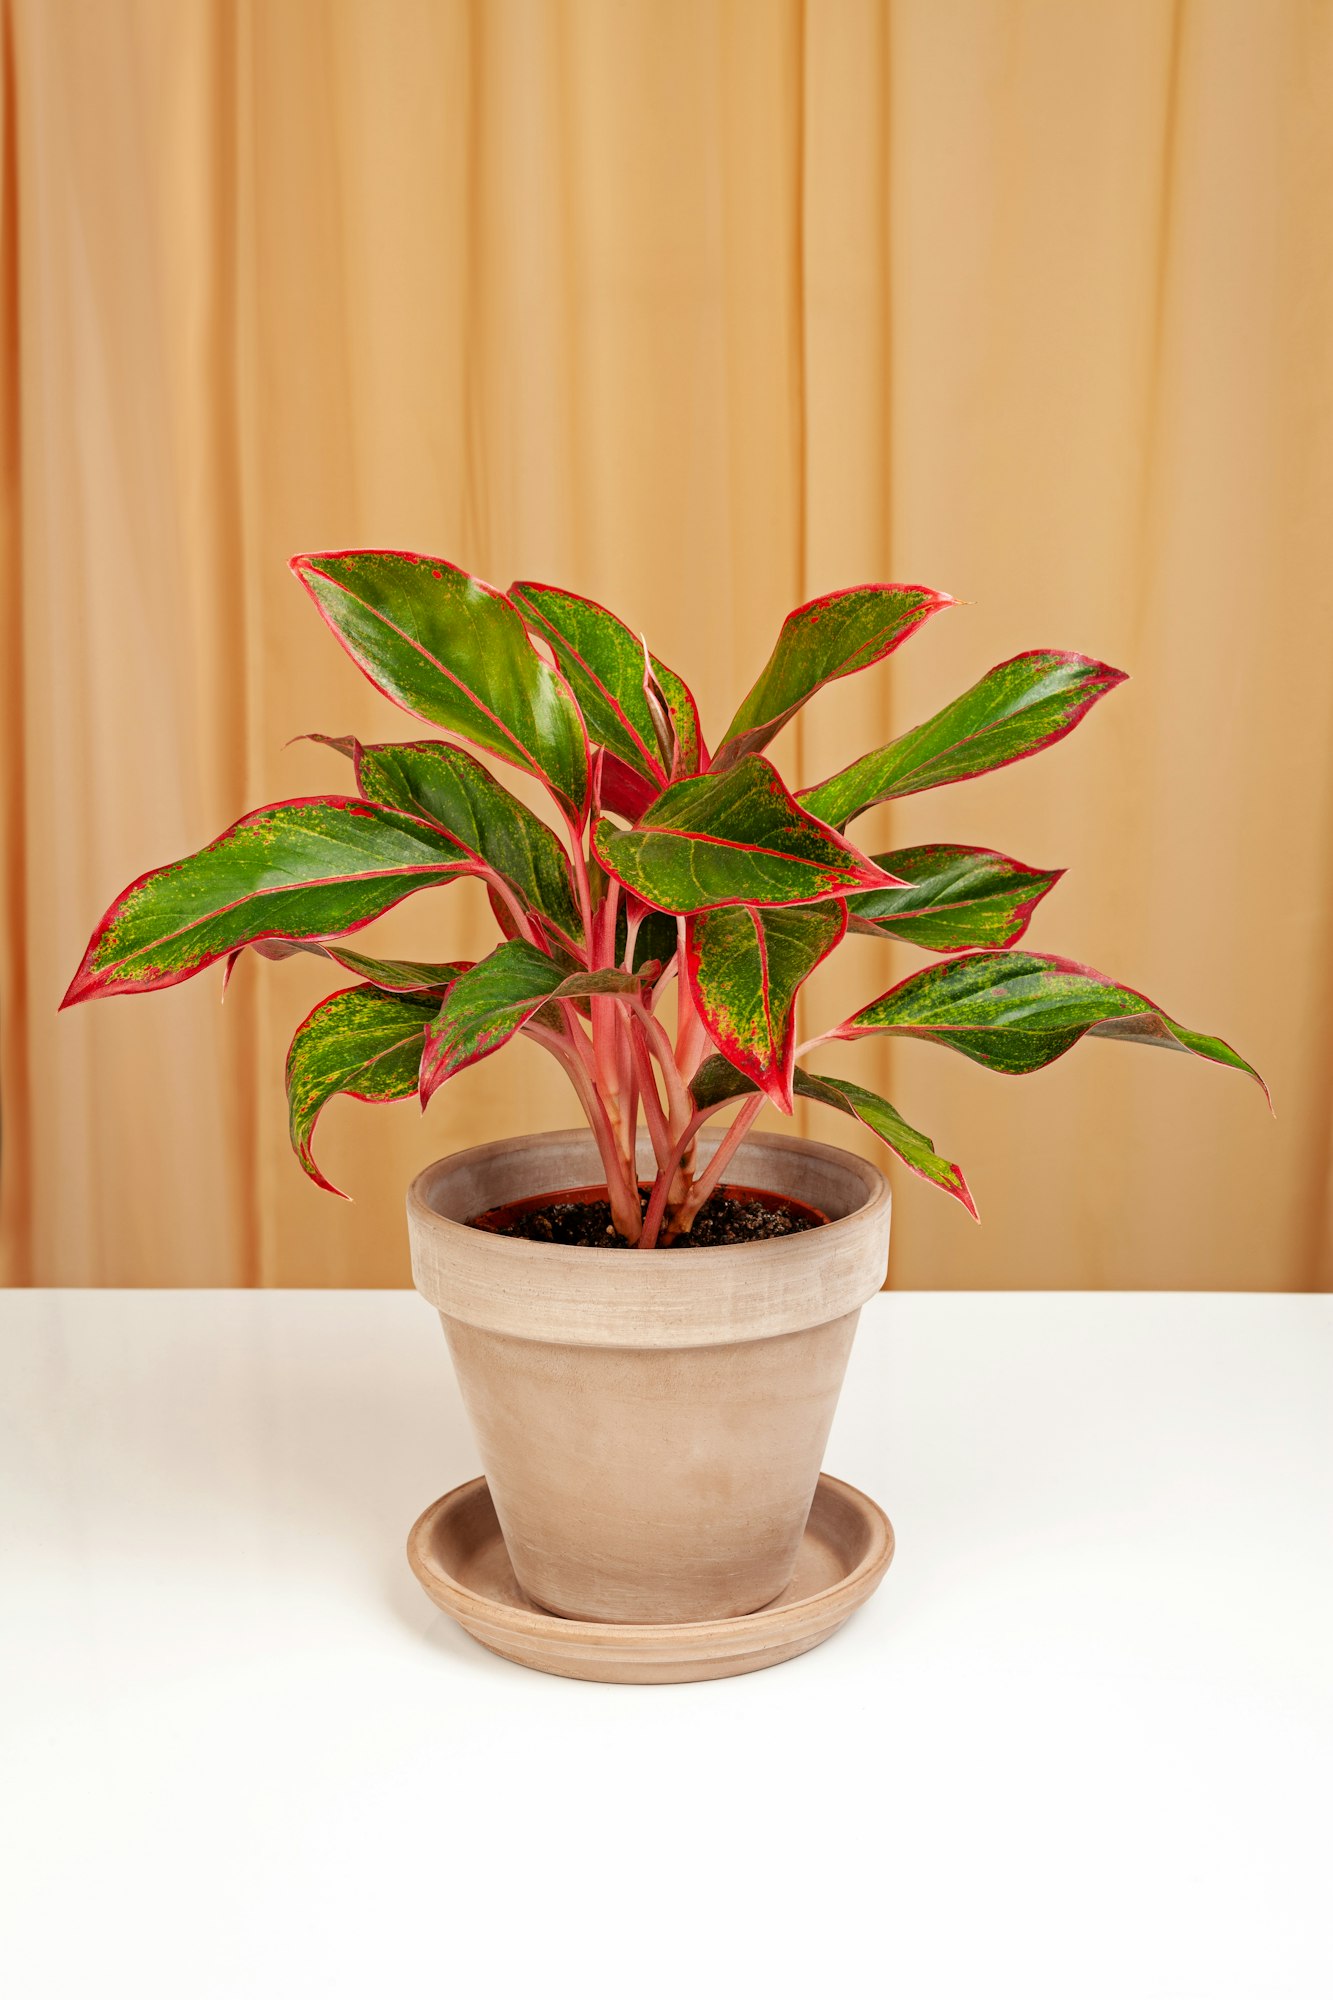 Alocasia Pictus plant